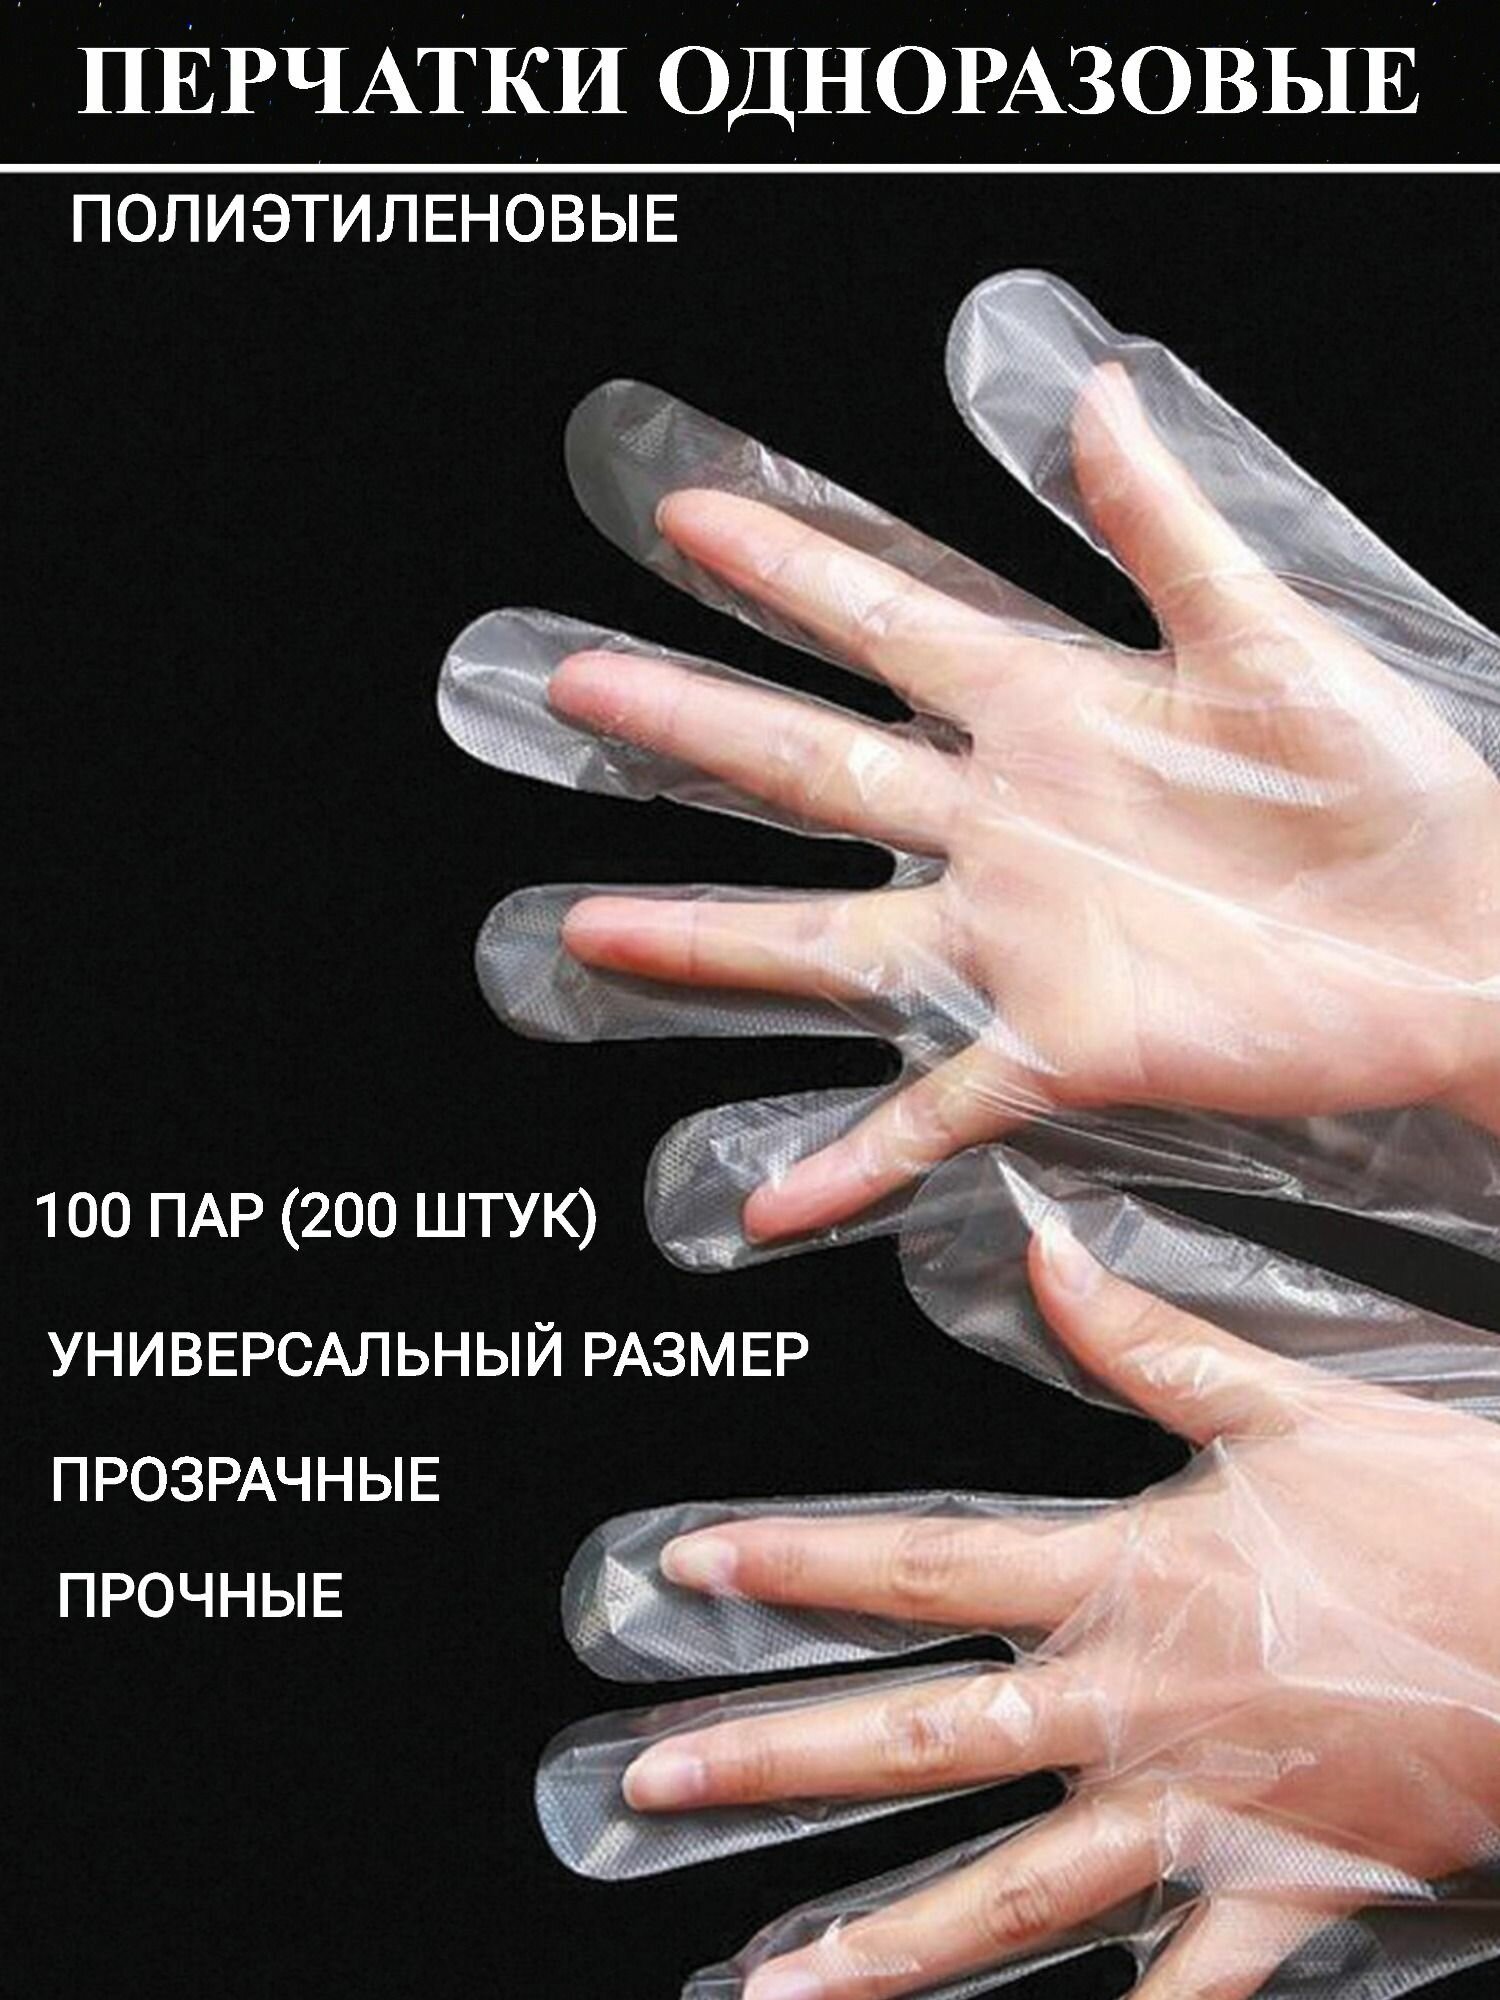 Полиэтиленовые перчатки 100 пар